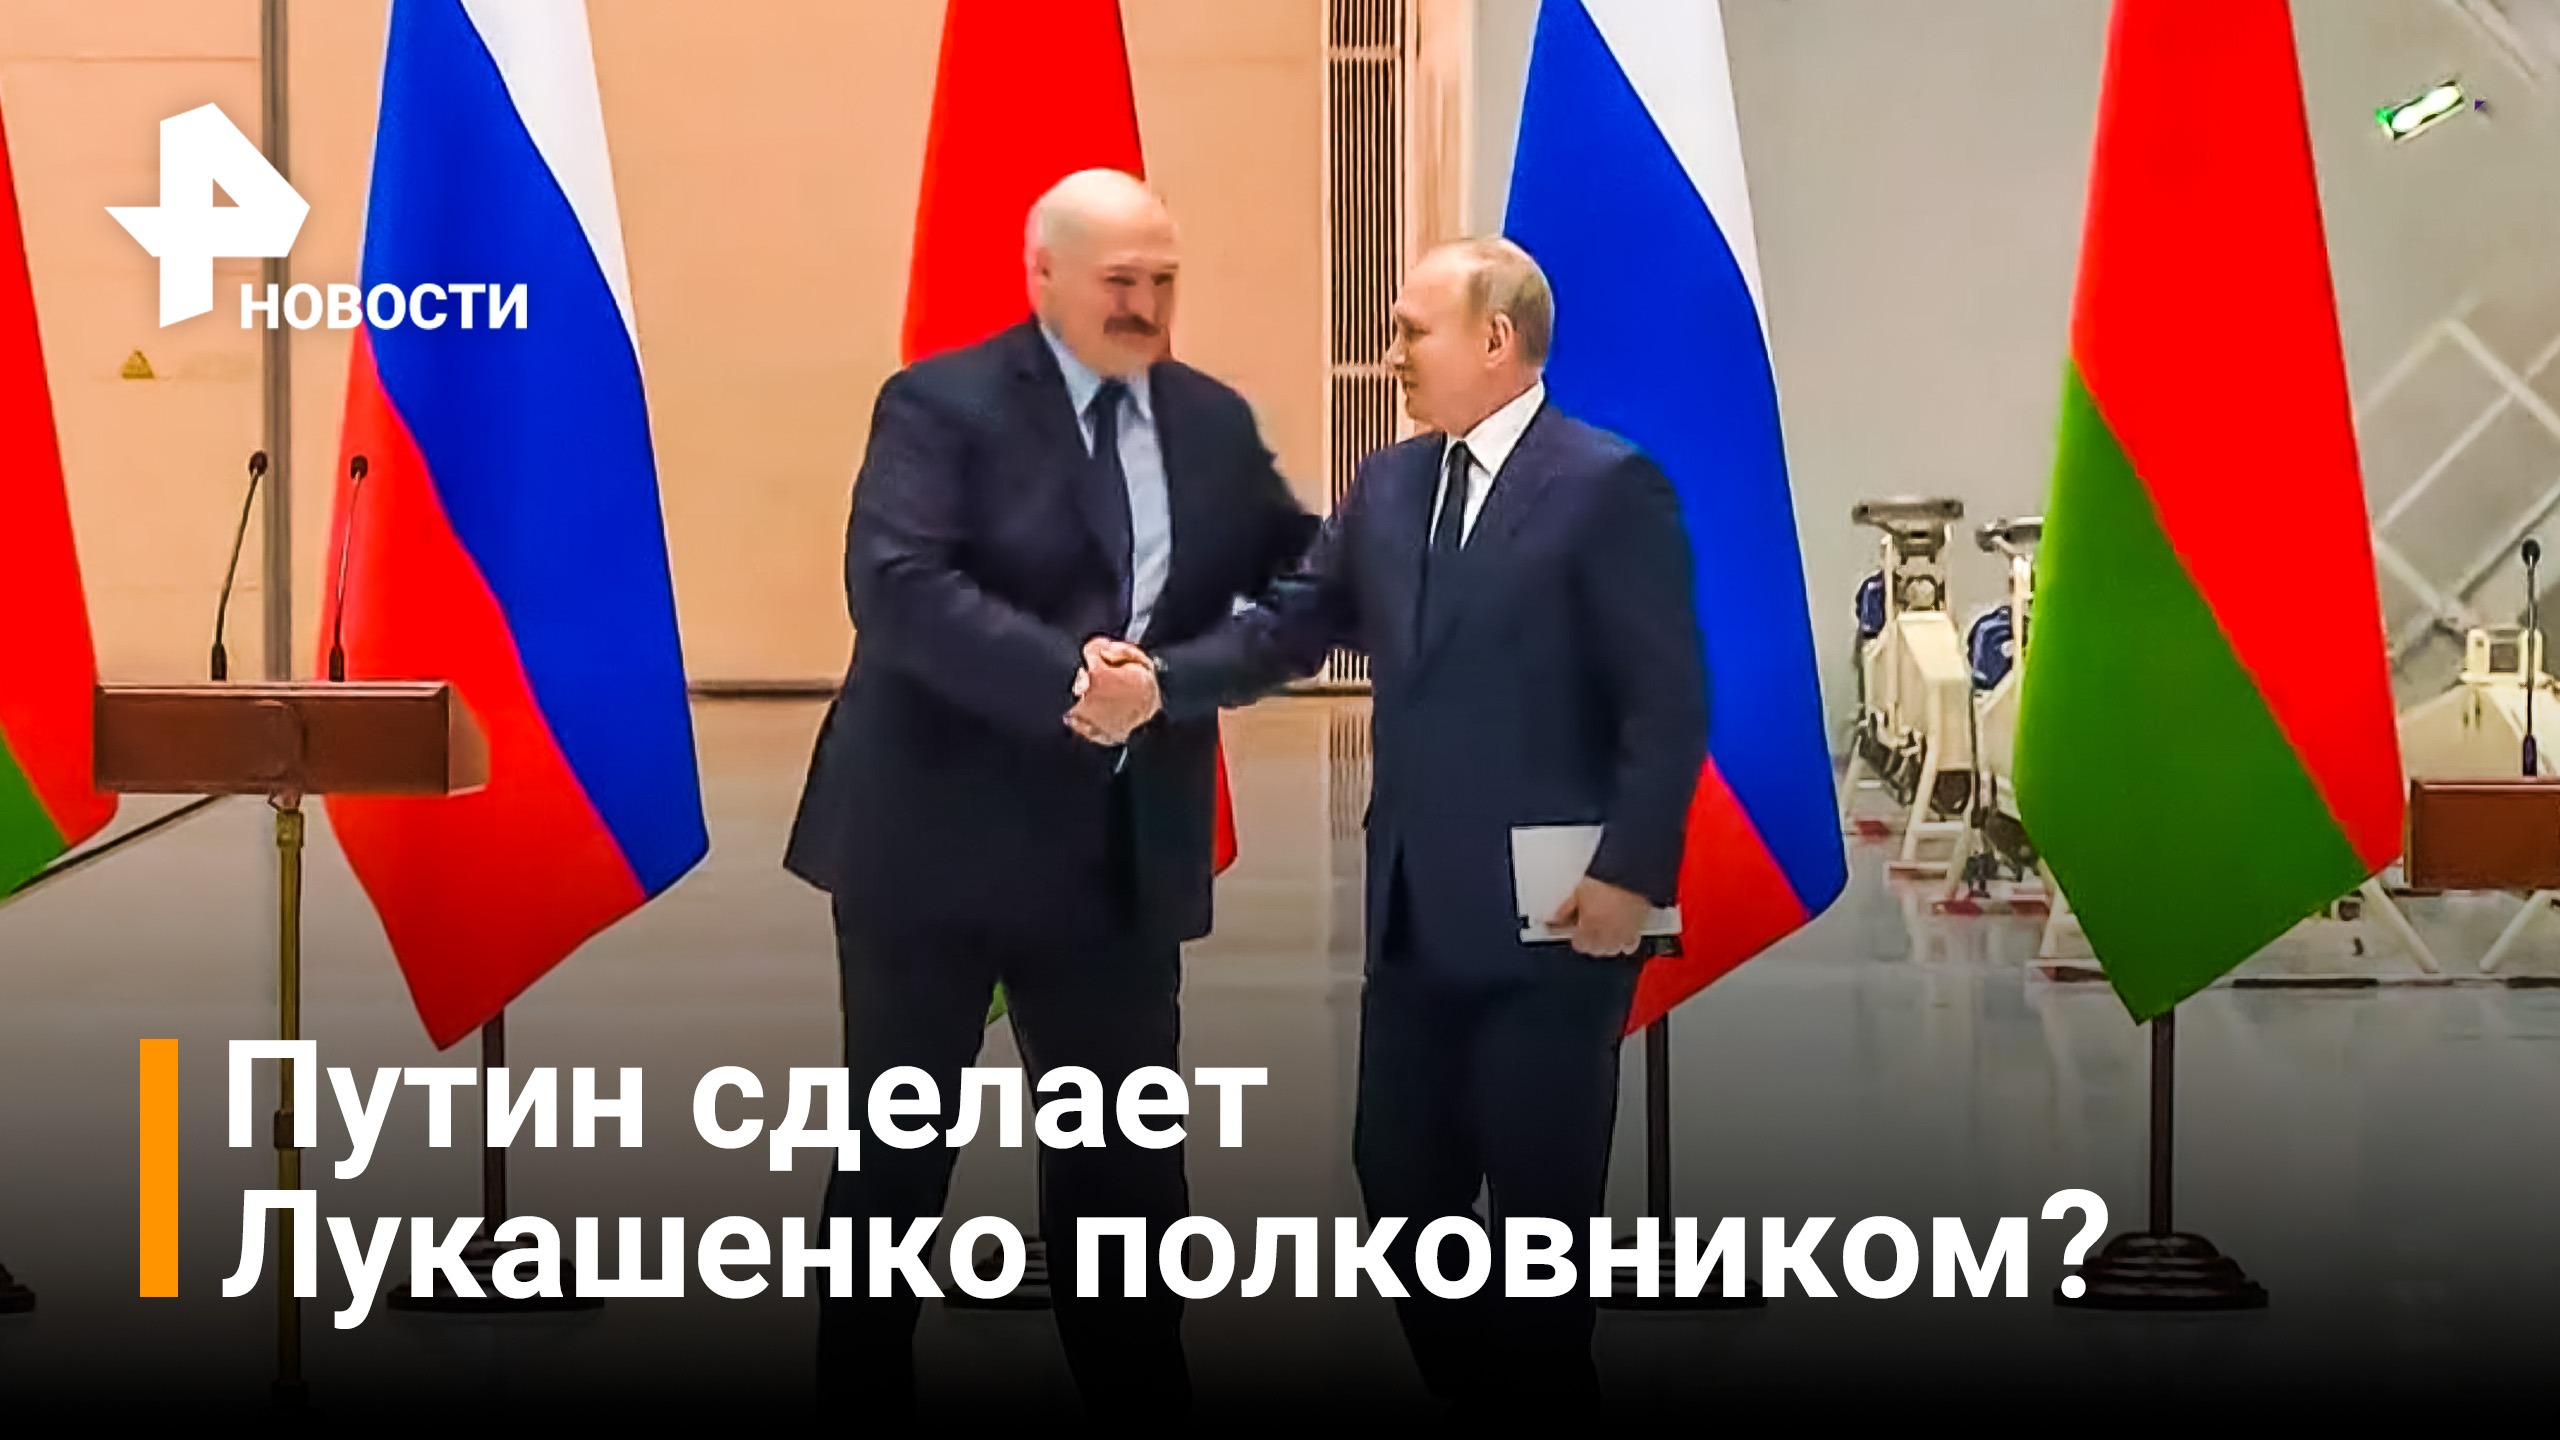 Путин пообещал присвоить Лукашенко звание полковника / РЕН Новости